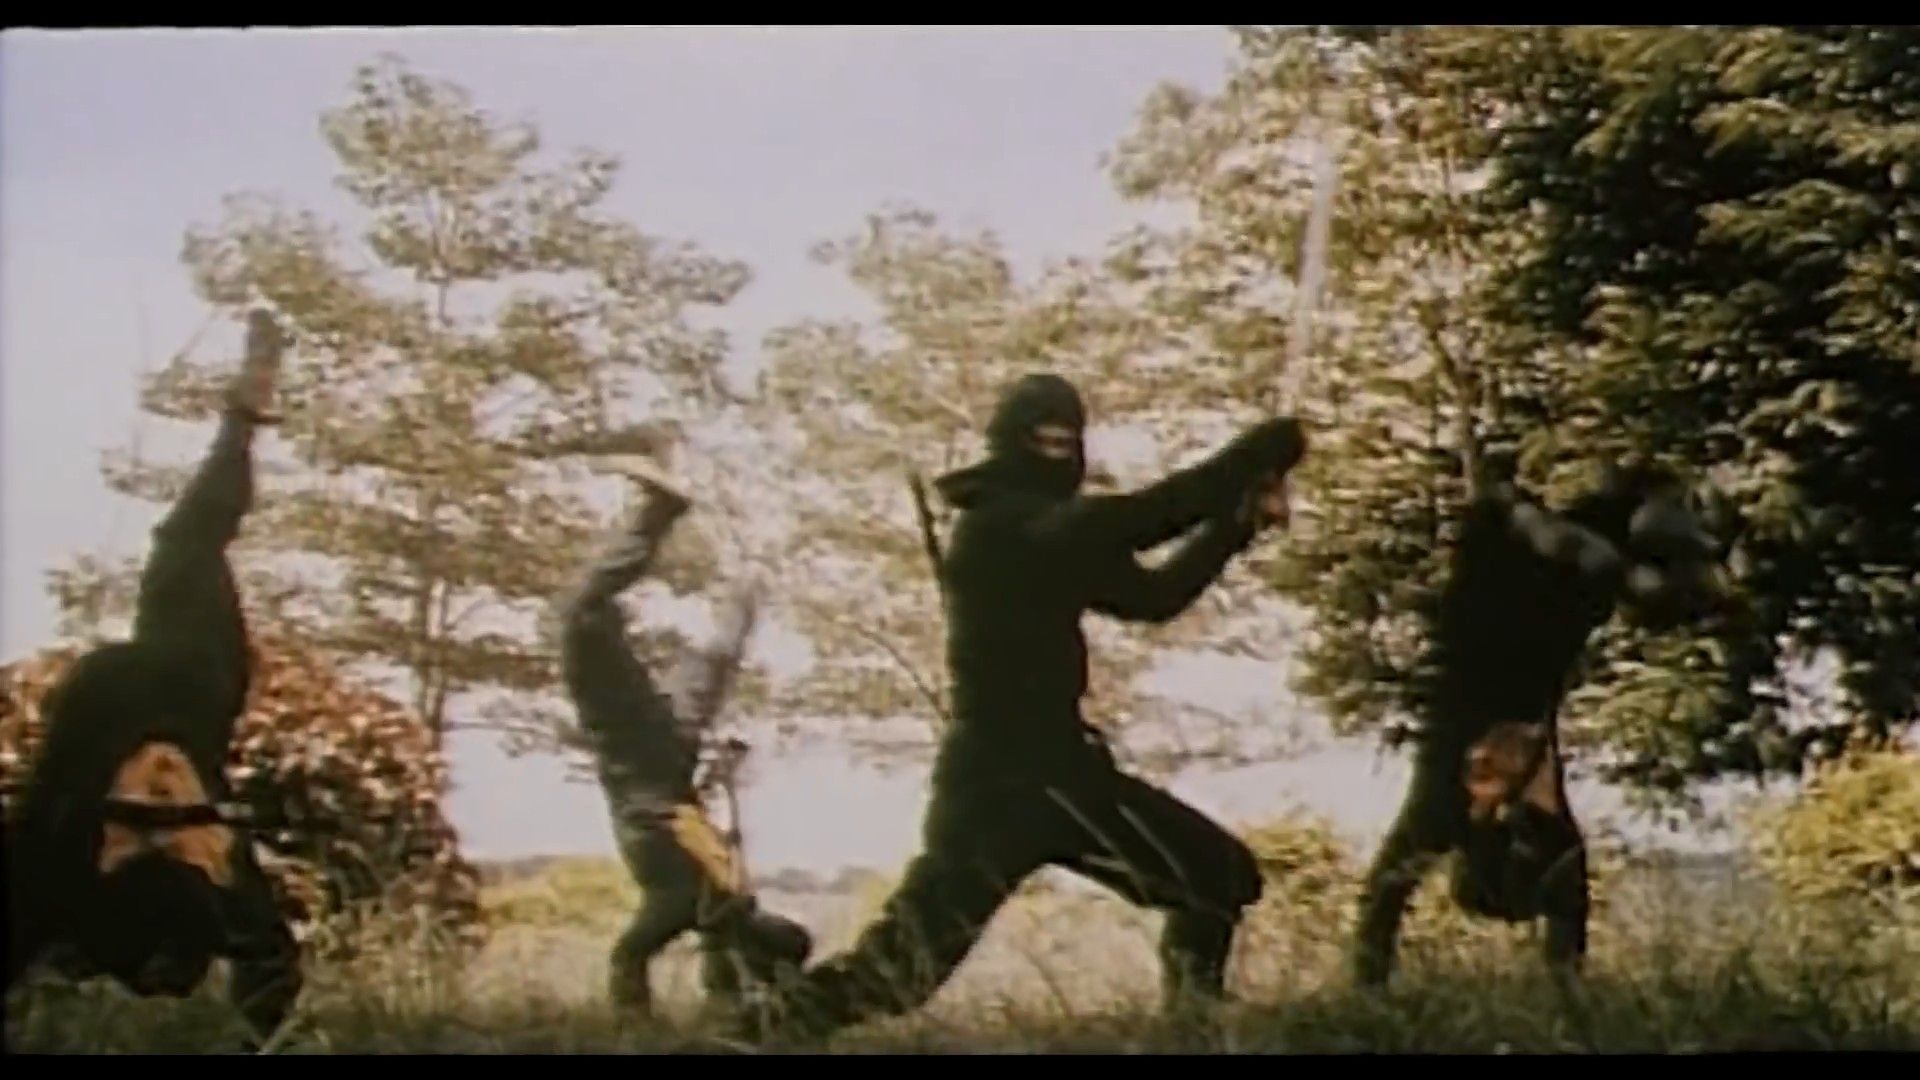 Ninja Marathon: Ninjasploitation craziness from the 80s!